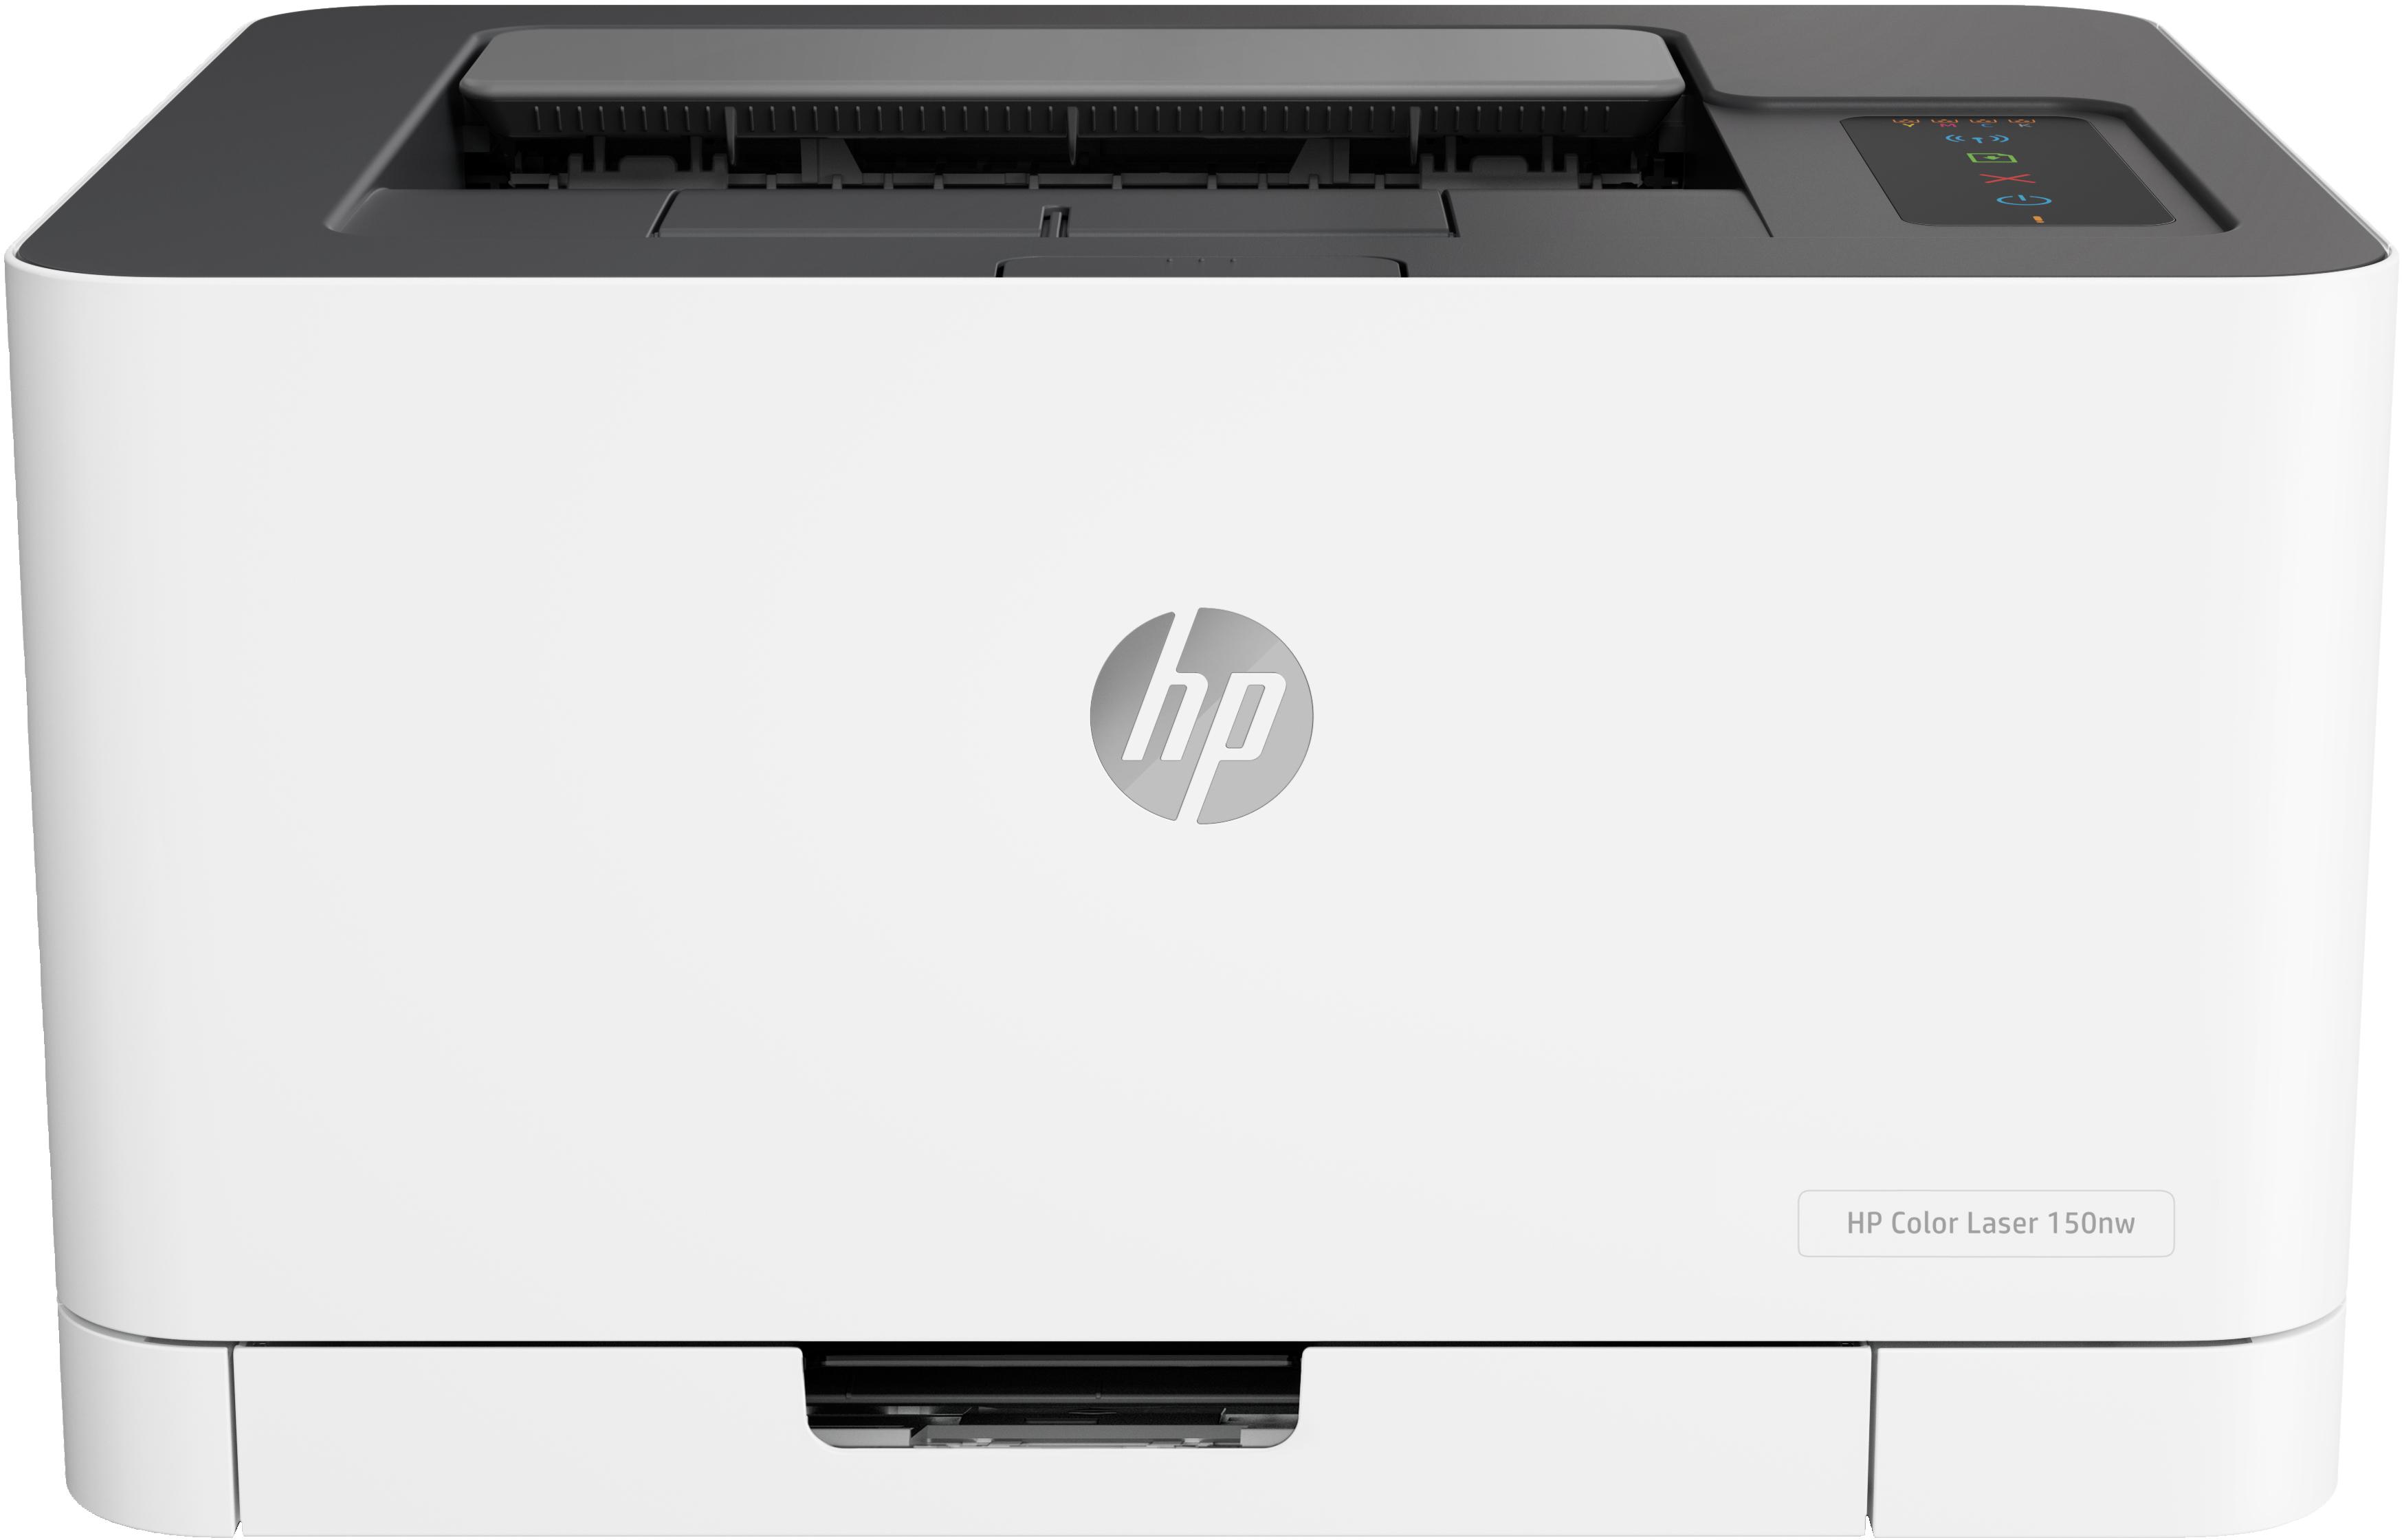 Impresora Inyección de Tinta HP Color Laser 150nw